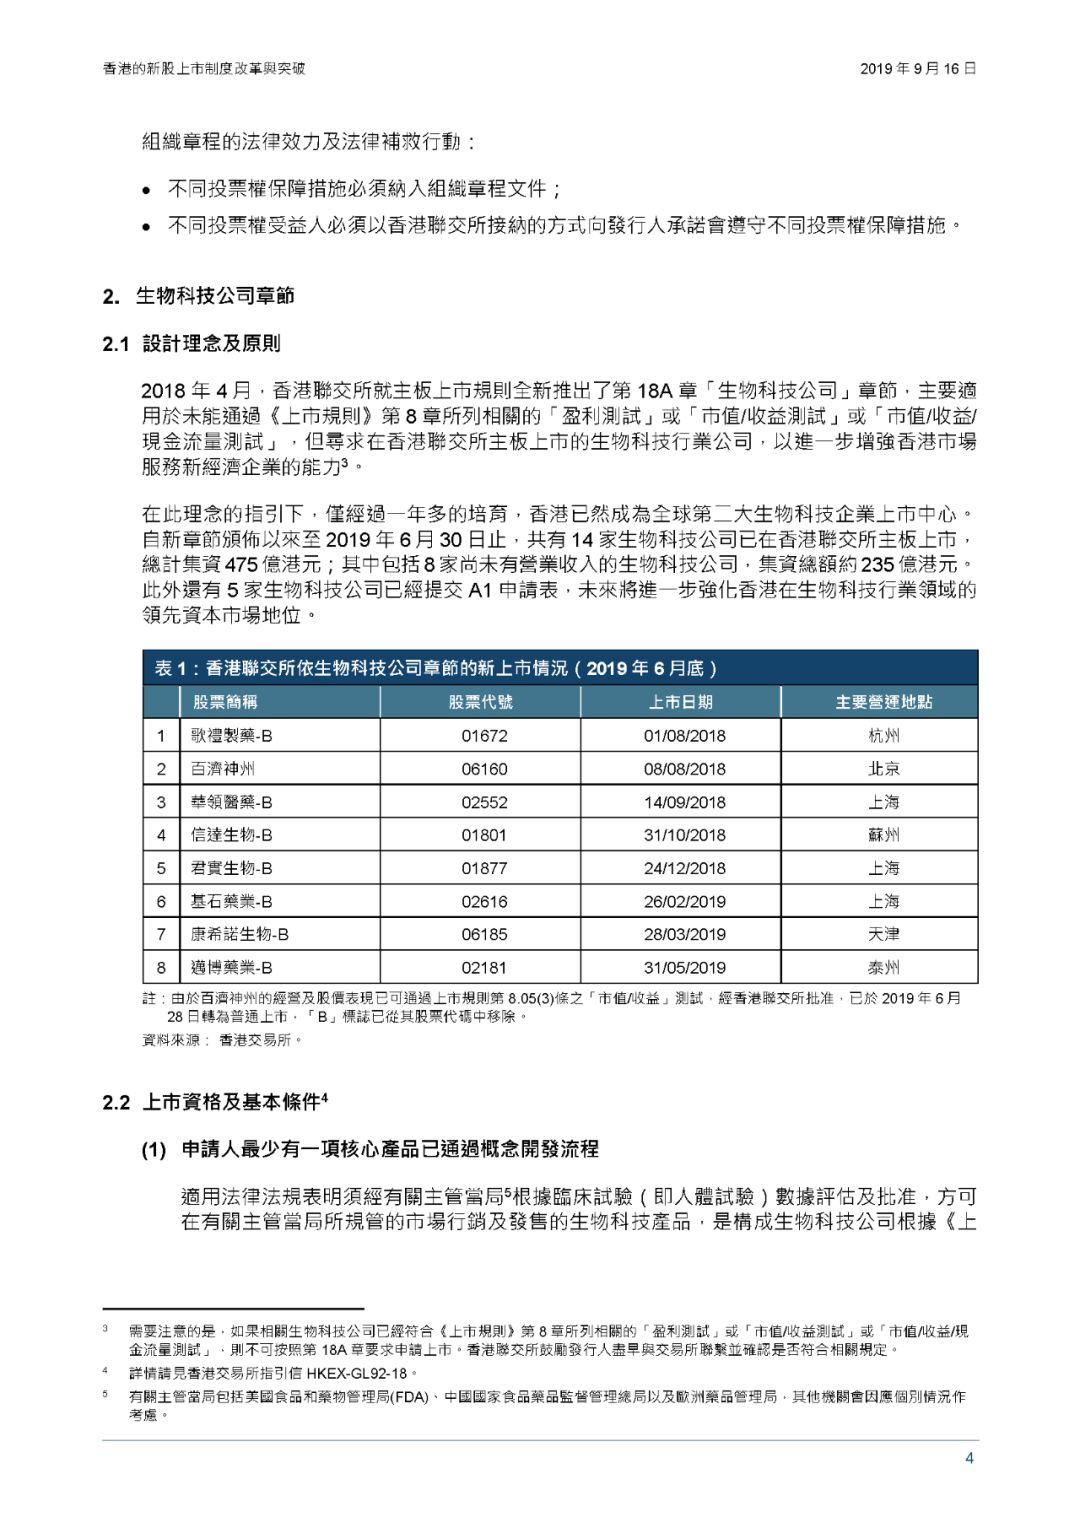 香港交易所研究报告：香港的新股上市制度改革与突破